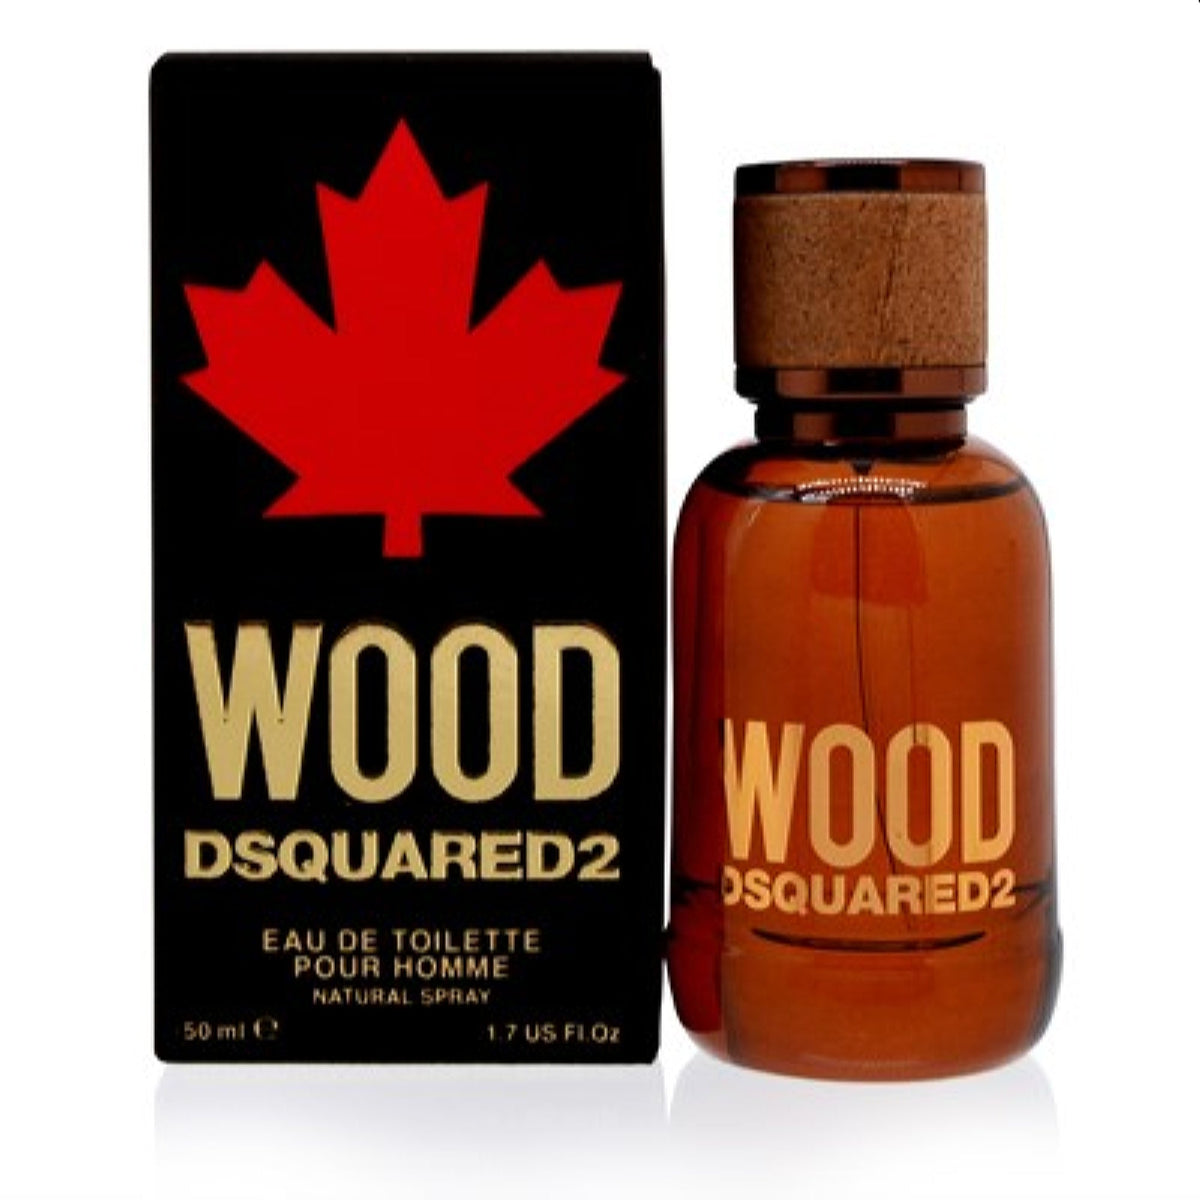 Wood  Dsquared2 Edt Spray 1.7 Oz (50 Ml) For Men 5B08